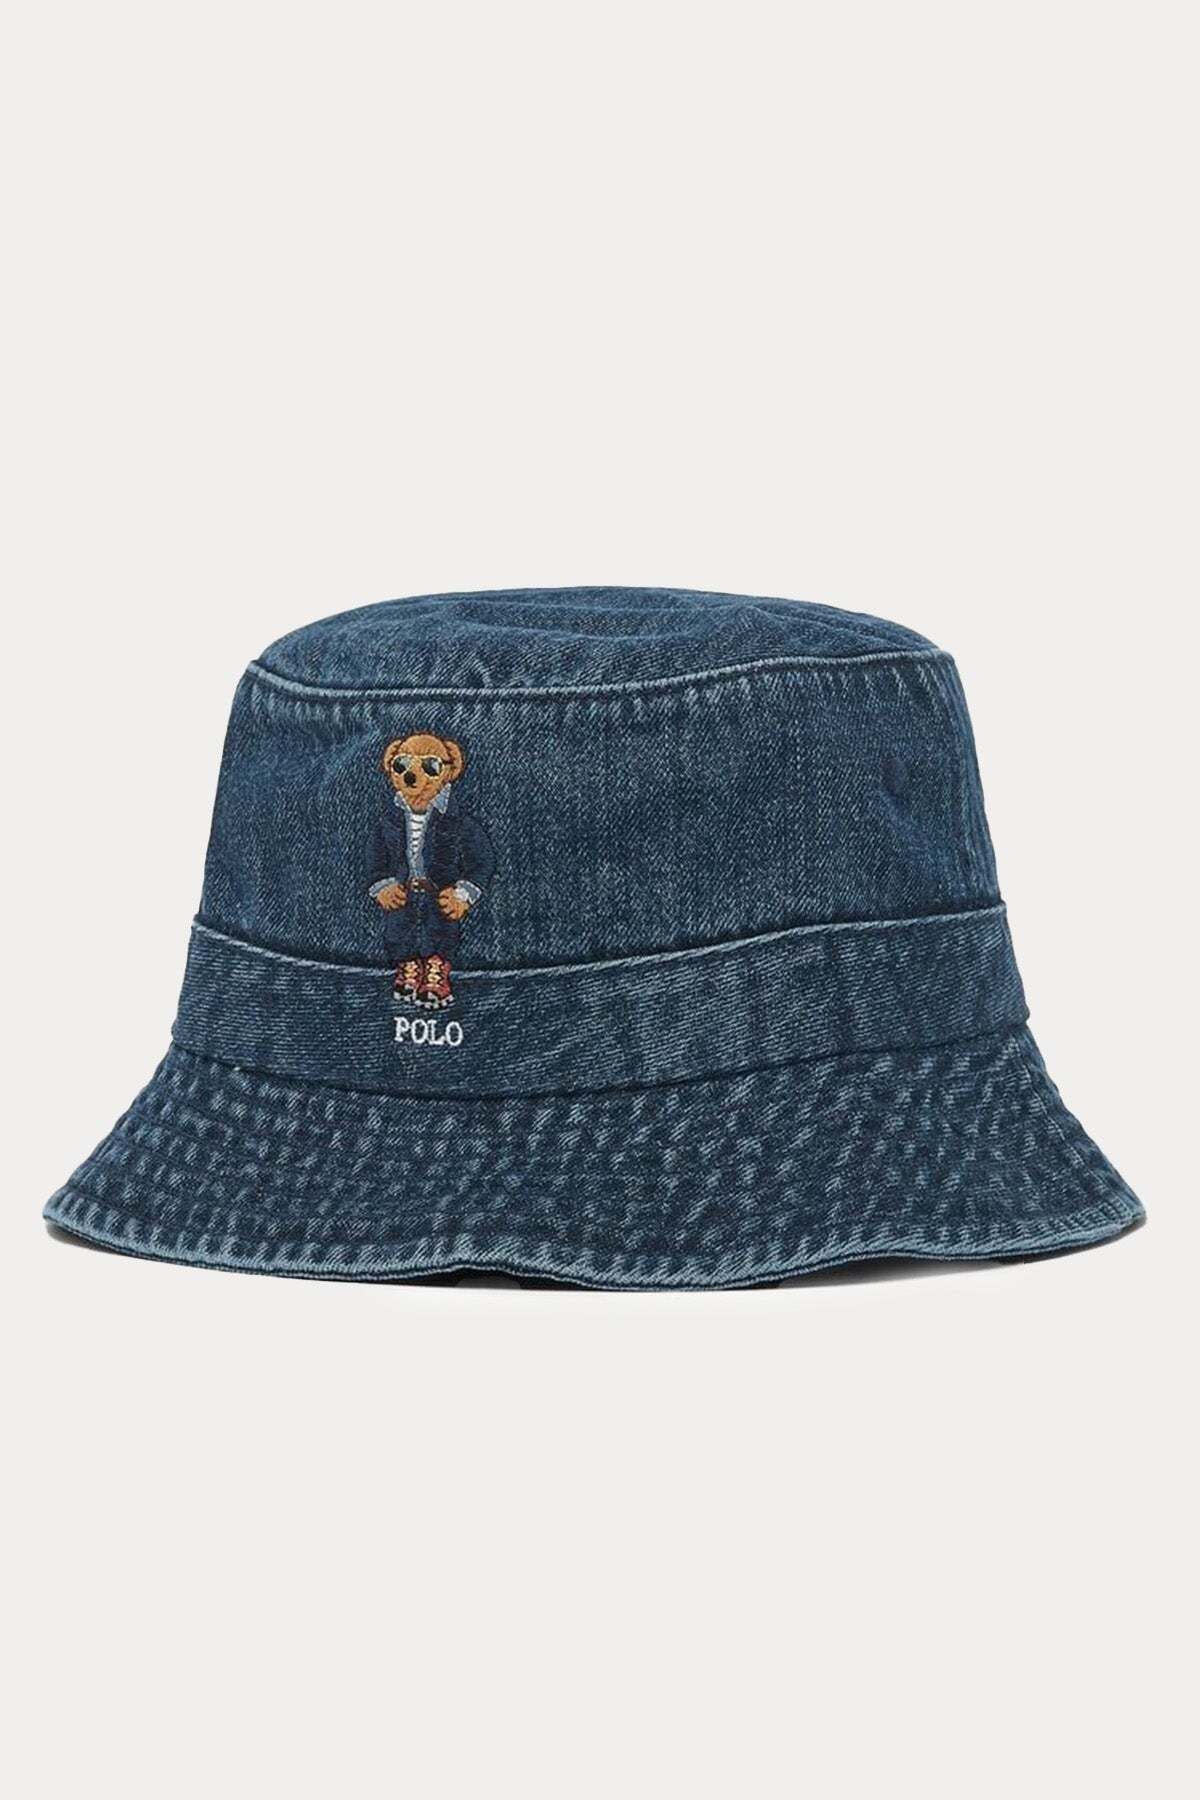 Ralph Lauren Polo Bear Denim Bucket Şapka